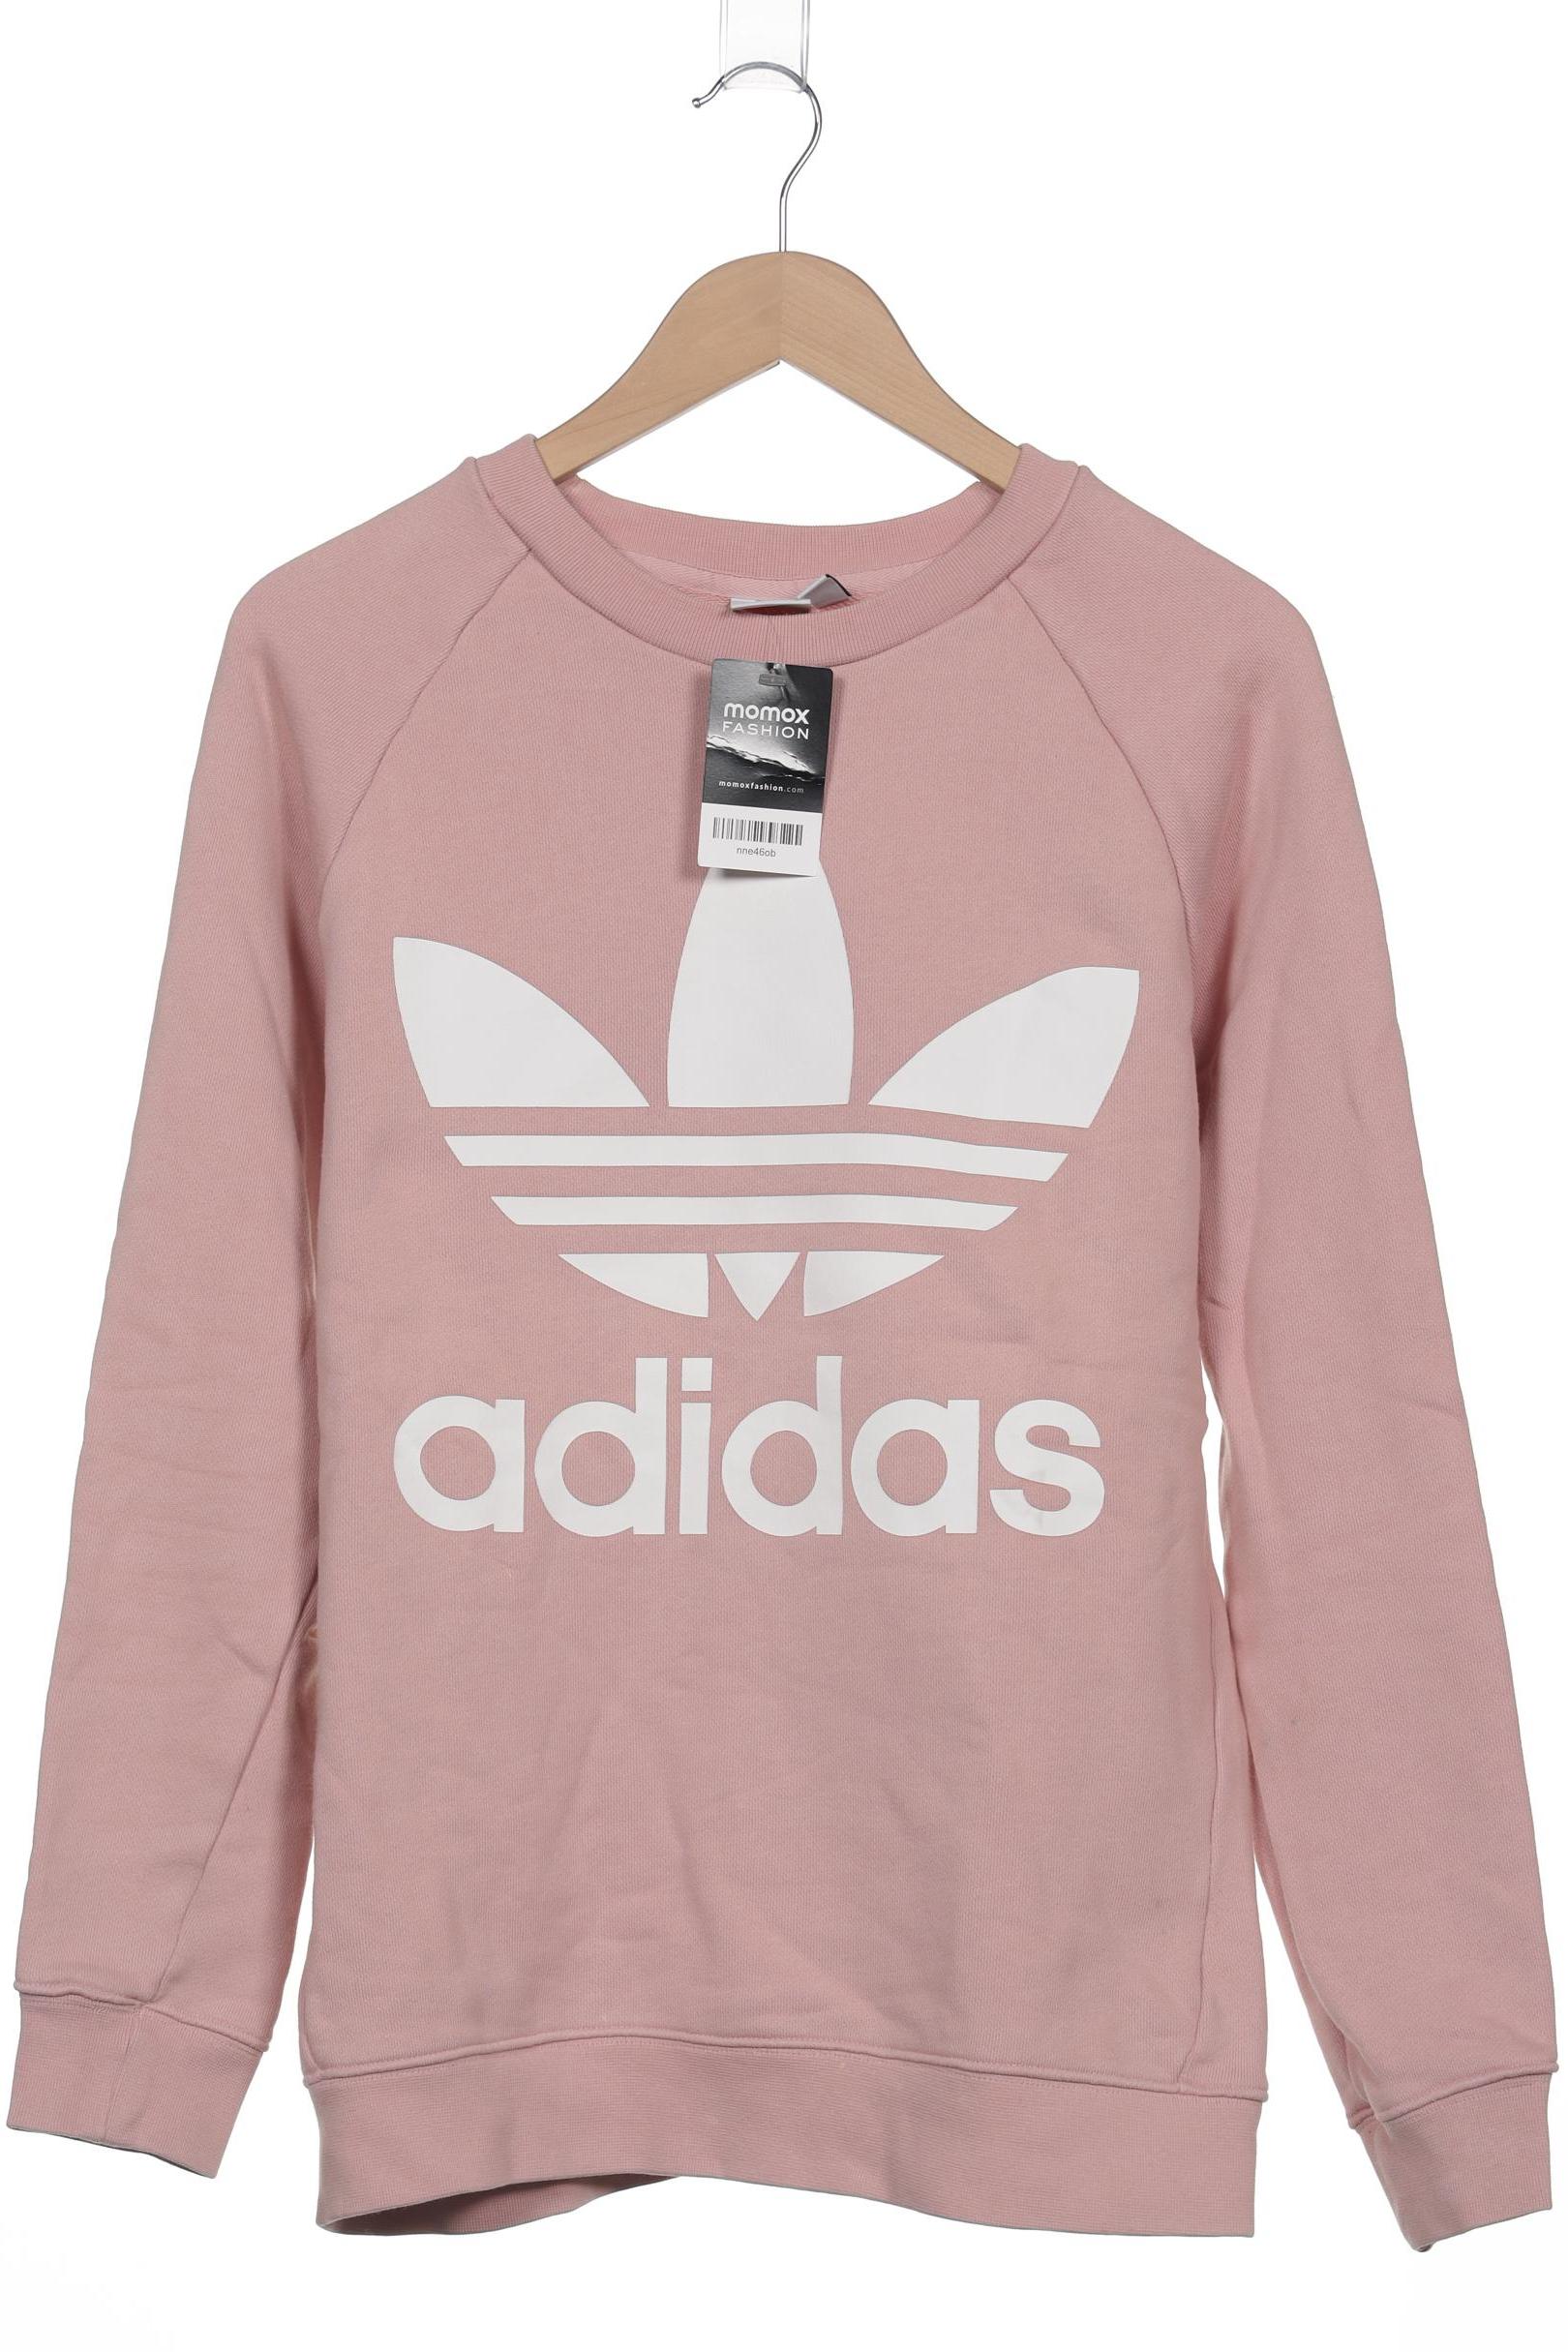 adidas Originals Damen Sweatshirt, pink, Gr. 36 von adidas Originals